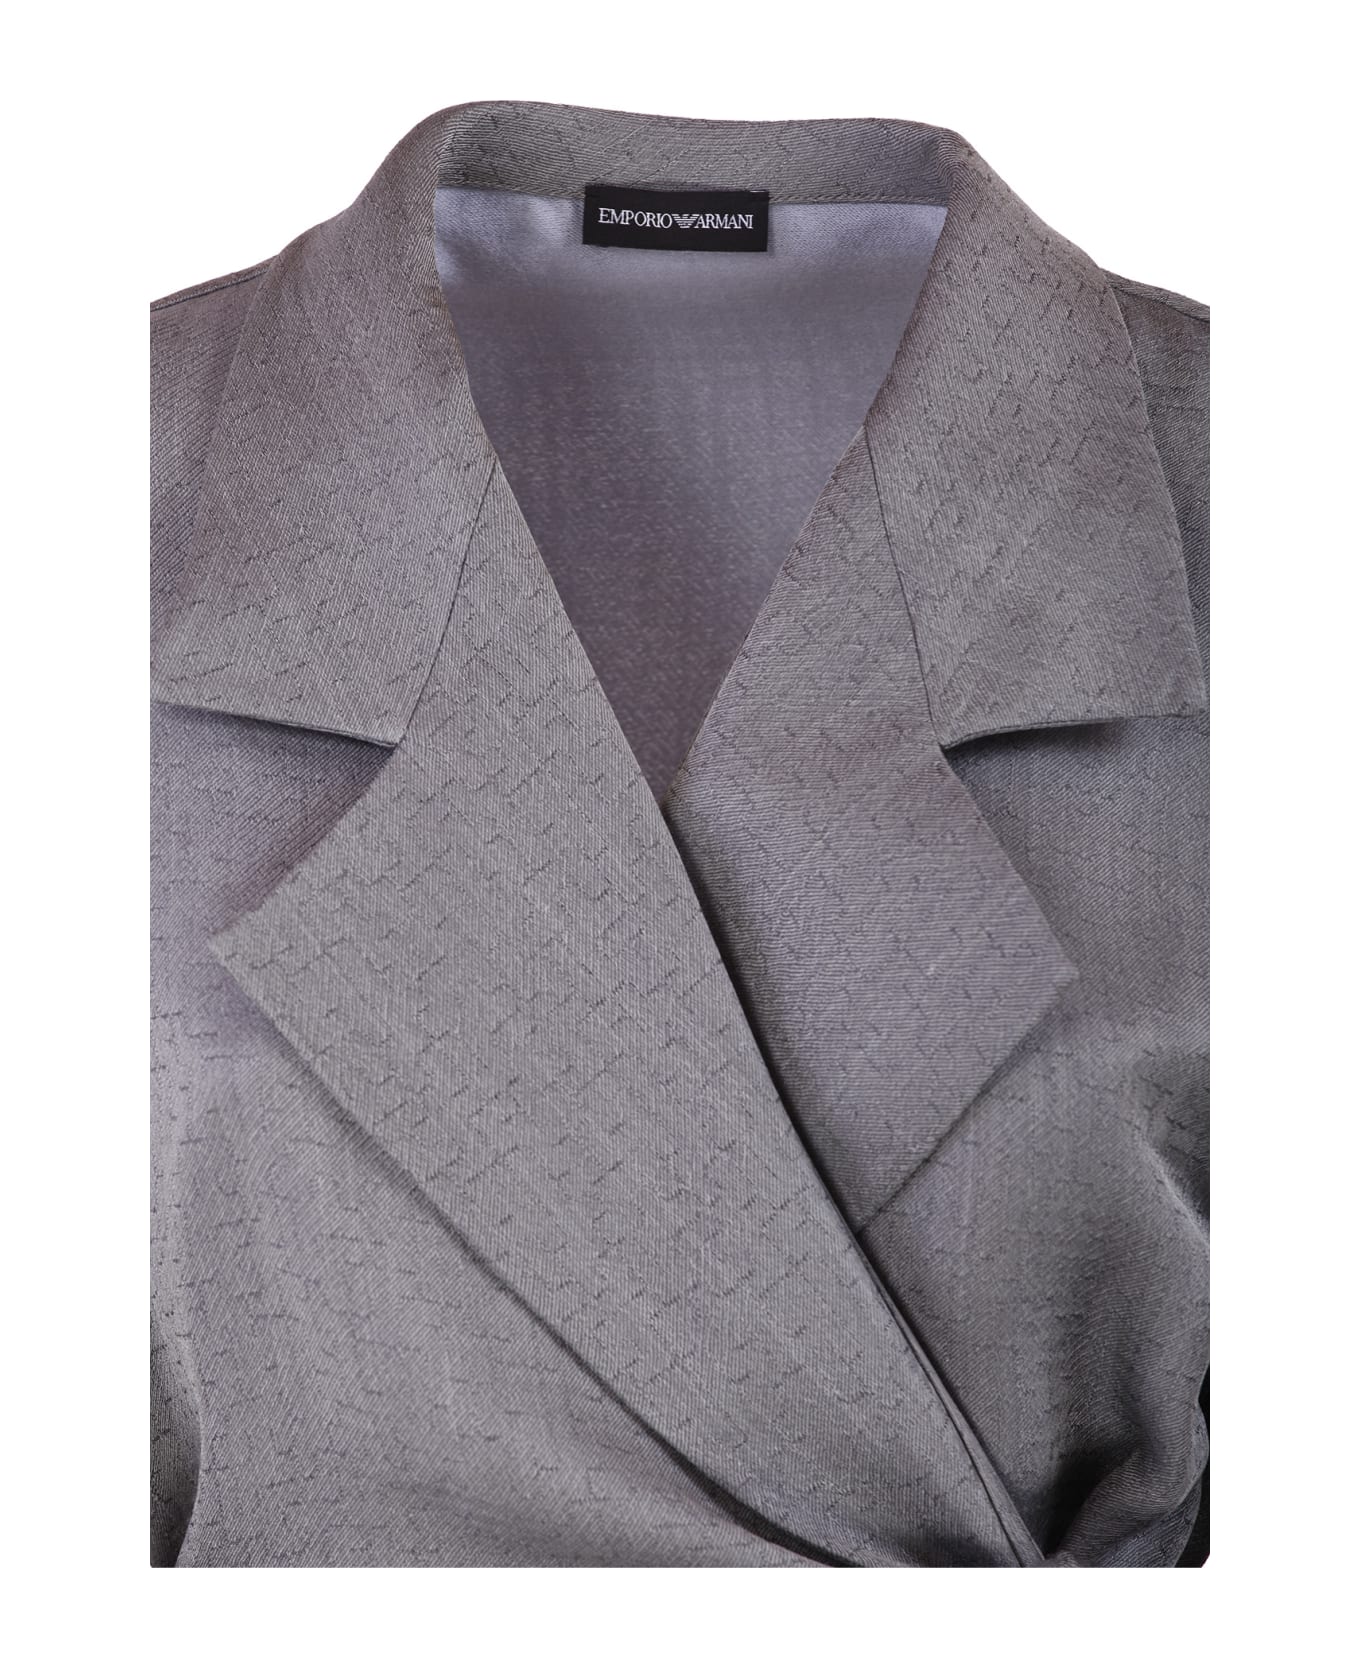 Emporio Armani Jackets Grey - Grey